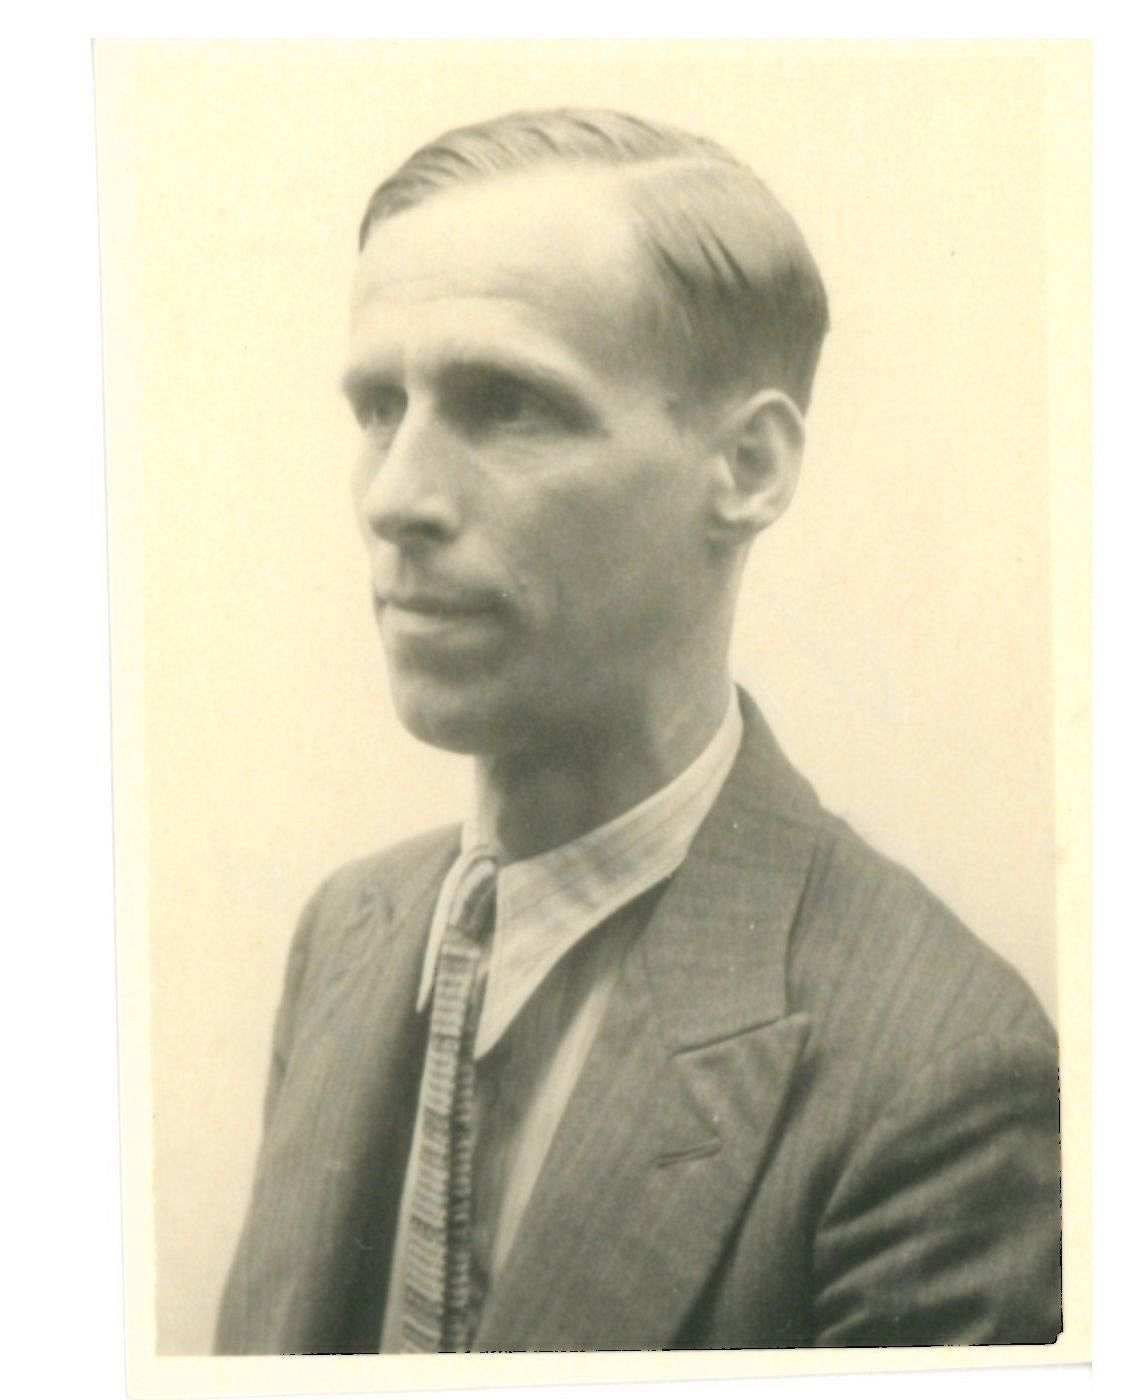 Hochkantfoto, schwarz-weiß Fotografie, Porträt von der Seite, ein ca. 30 bis 40 Jahre alter Mannes im Anzug mit Krawatte und strenger Frisur mit Seitenscheitel